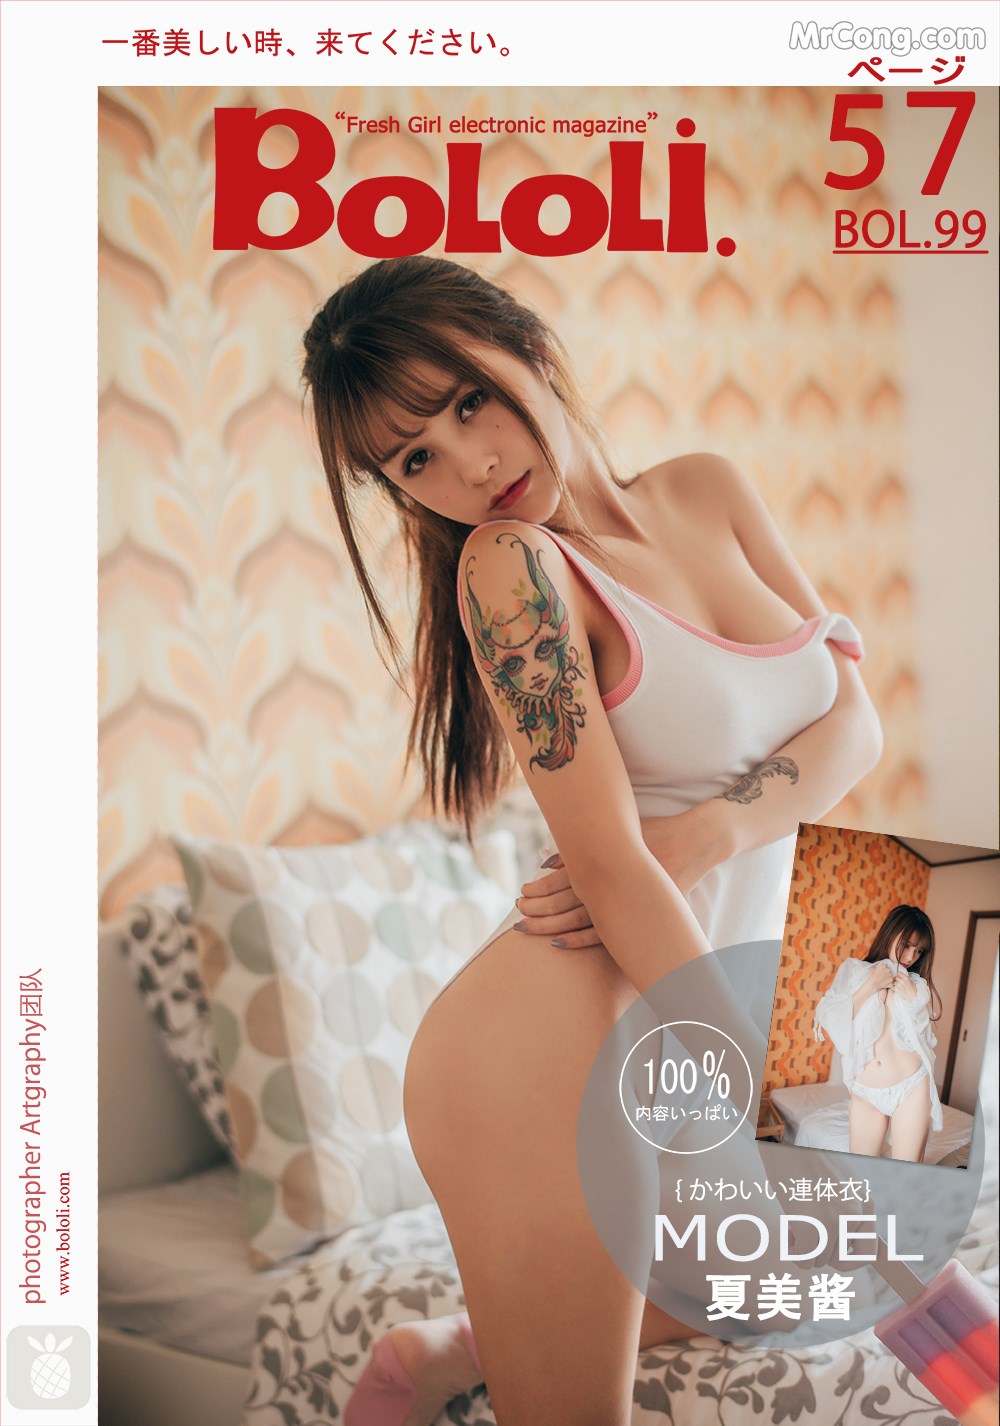 BoLoli 2017-08-08 Vol.099: Model Xia Mei Jiang (夏 美 酱) (58 photos) photo 1-0